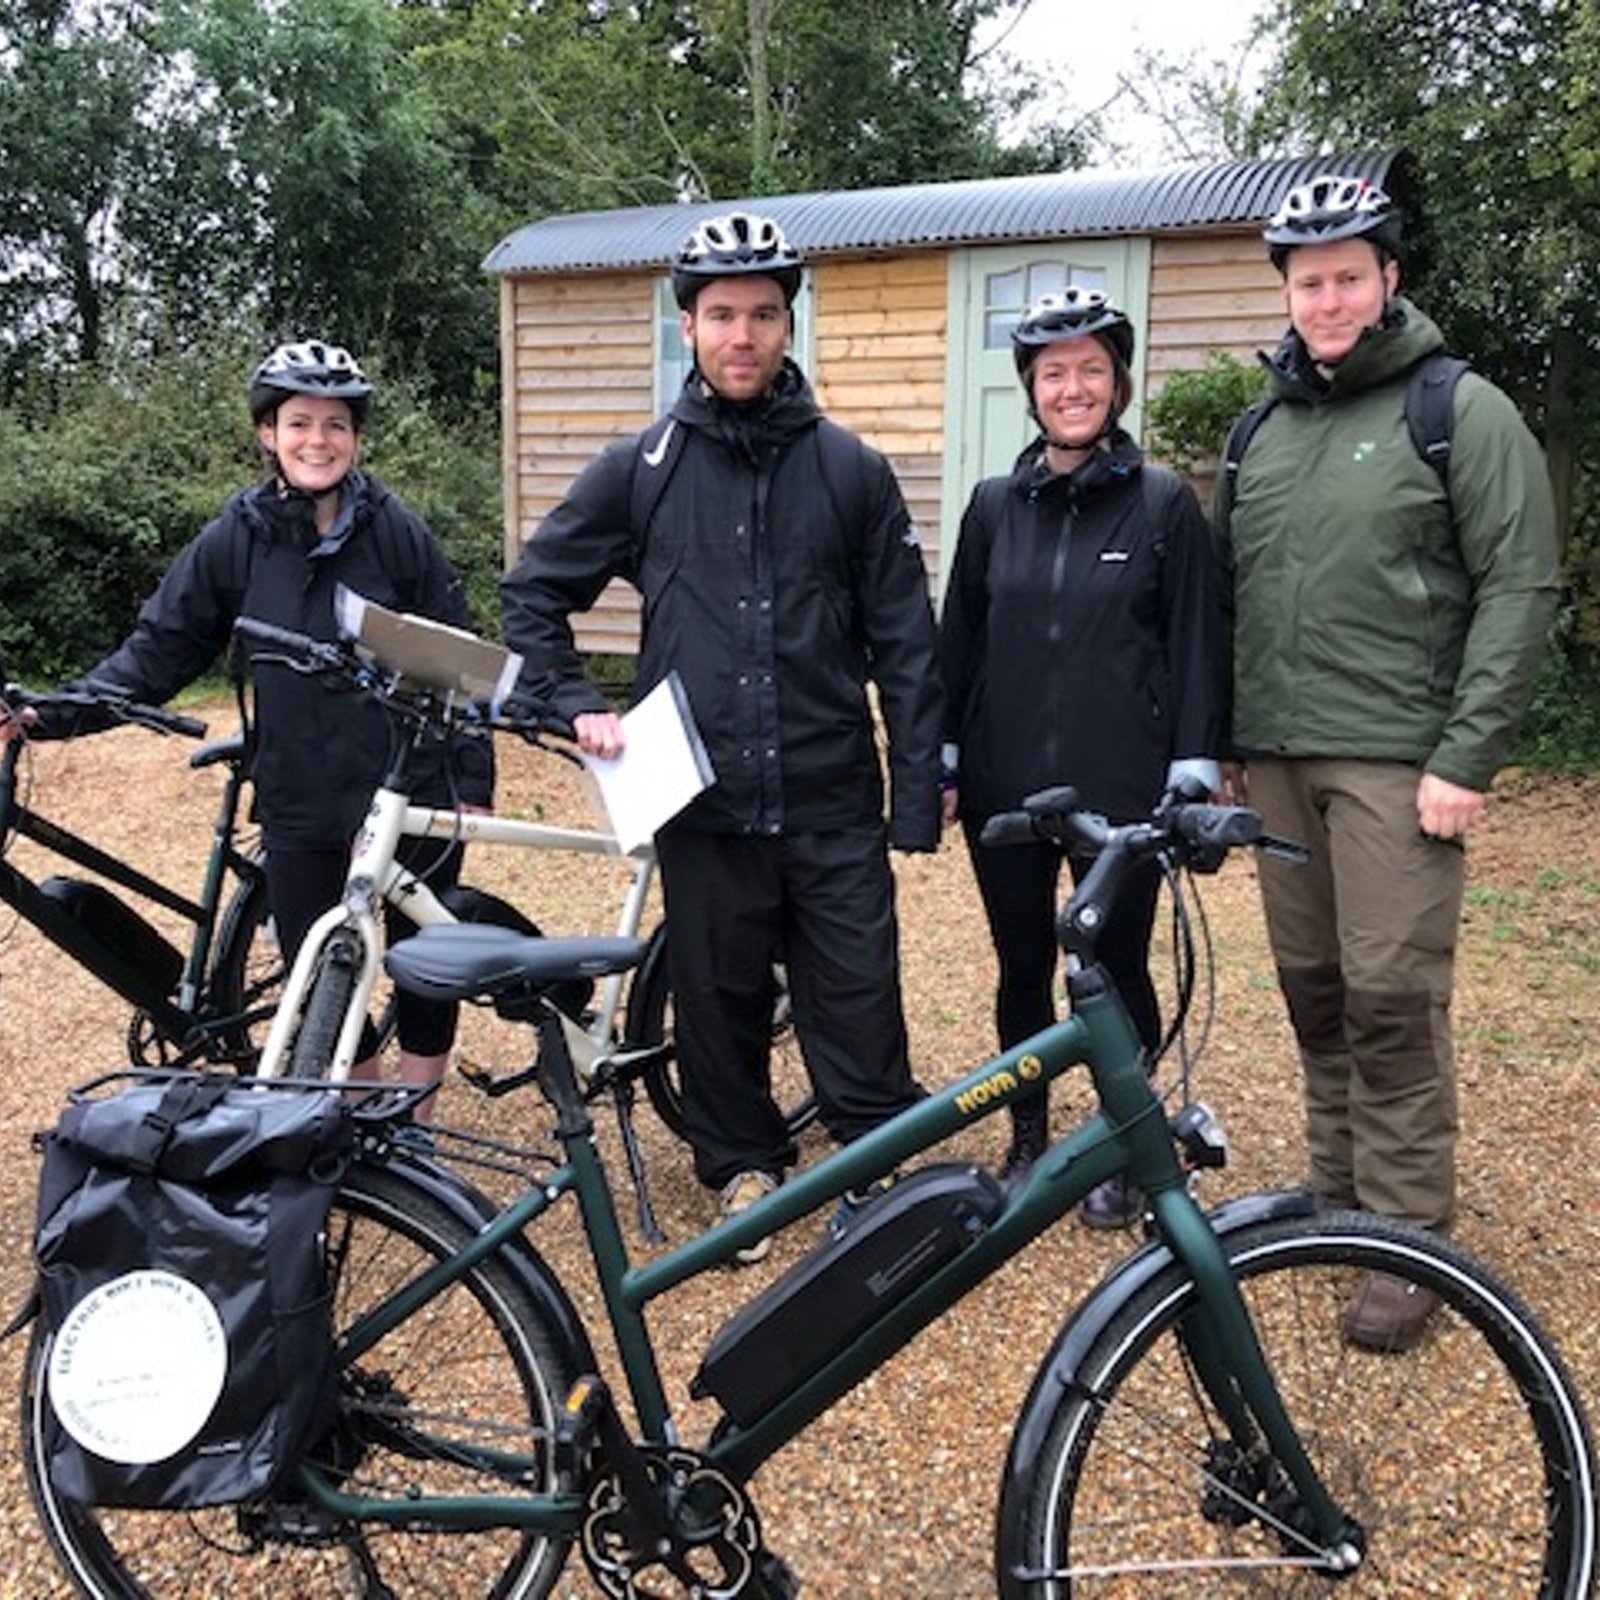 Electric bike self guided vineyard tour in United Kingdom